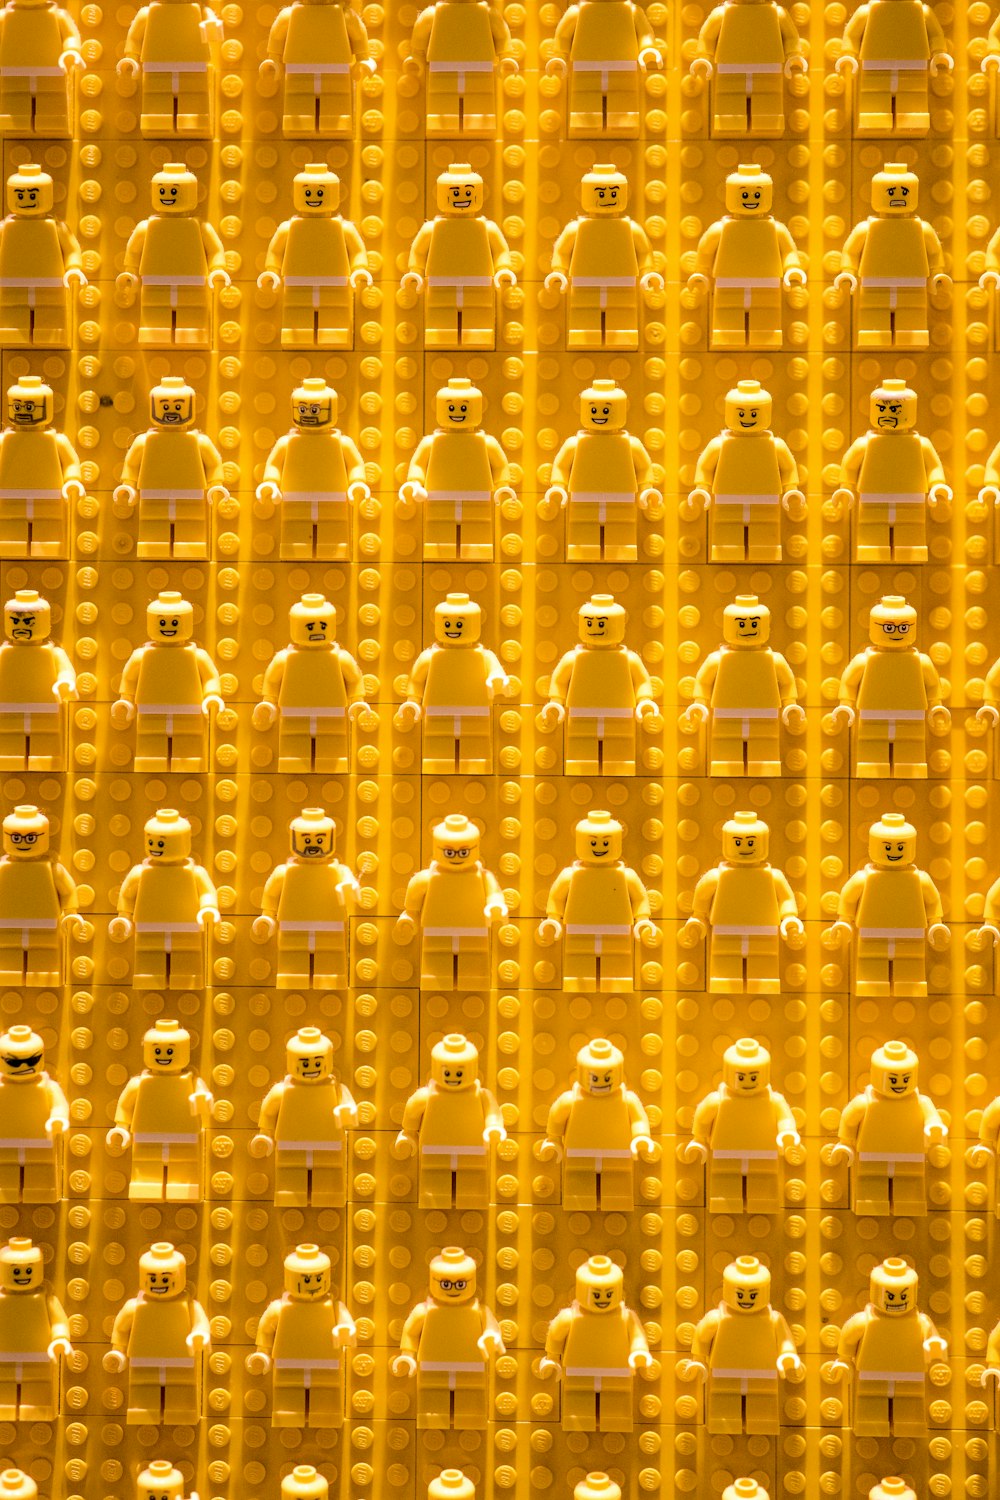 Eine große Gruppe gelber Legos mit Gesichtern darauf